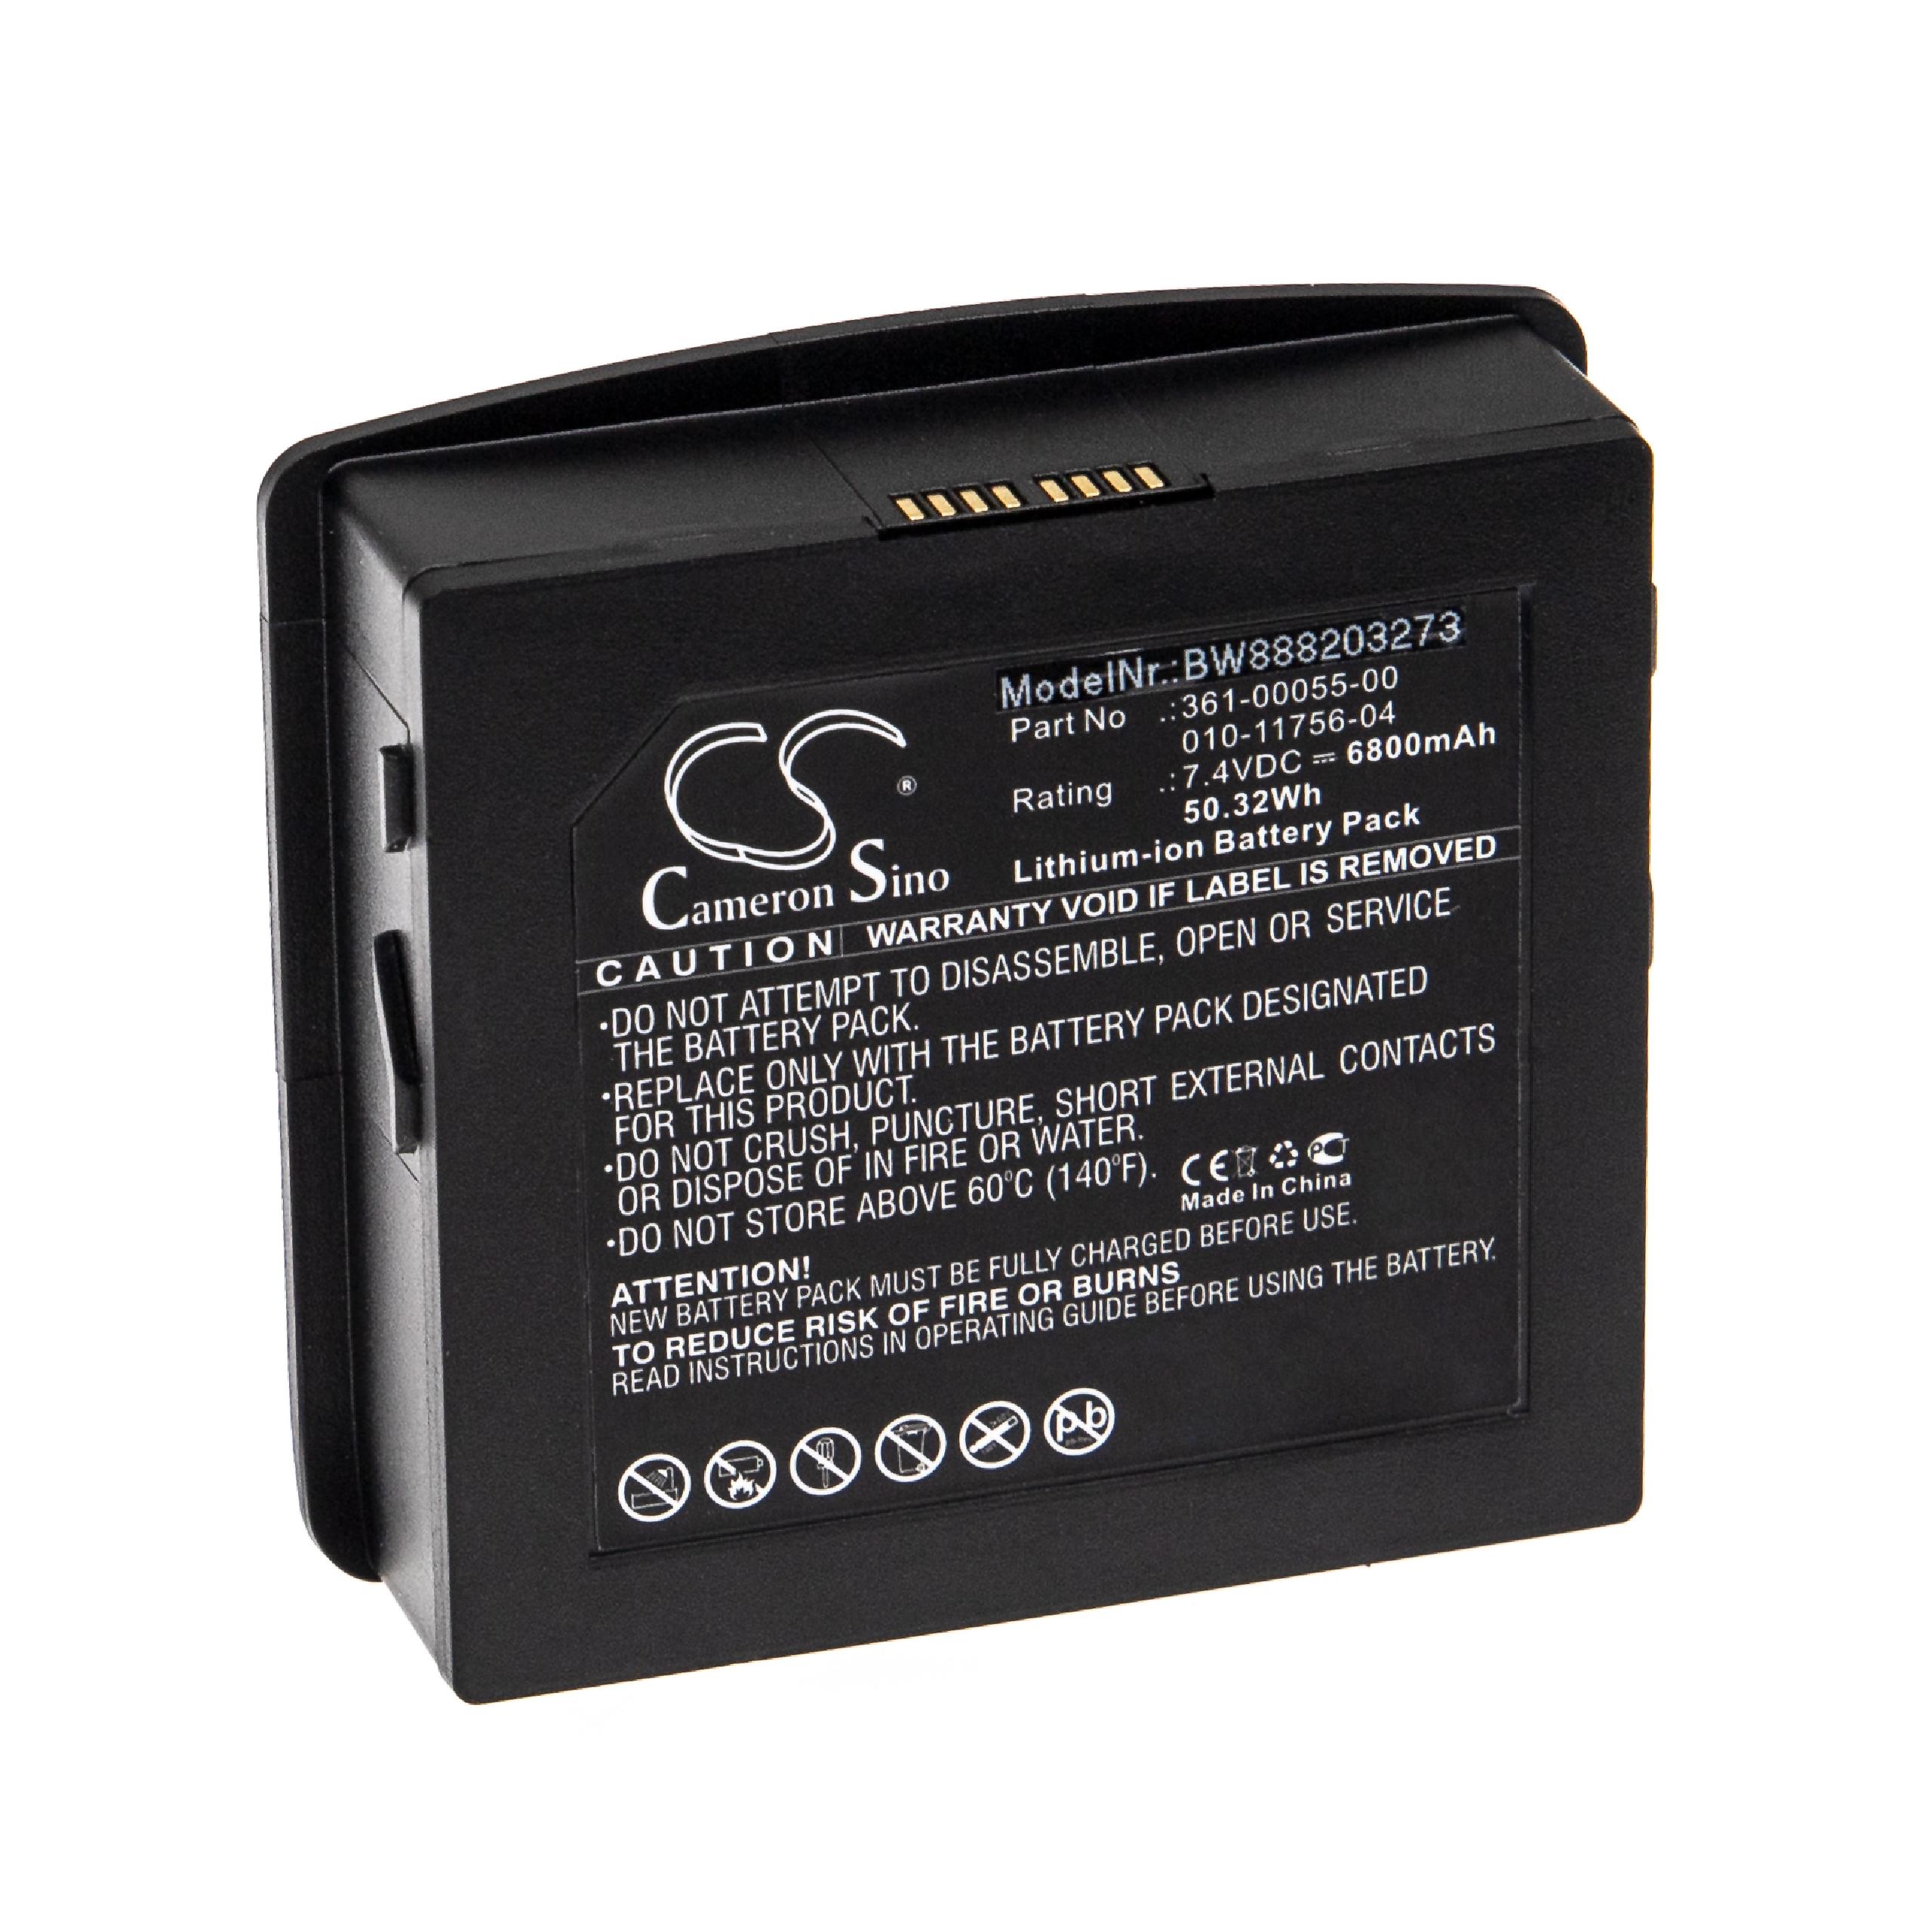 Batteria sostituisce Garmin 361-00055-00, 010-11756-04 per navigatore Garmin - 6800mAh 7,4V Li-Ion